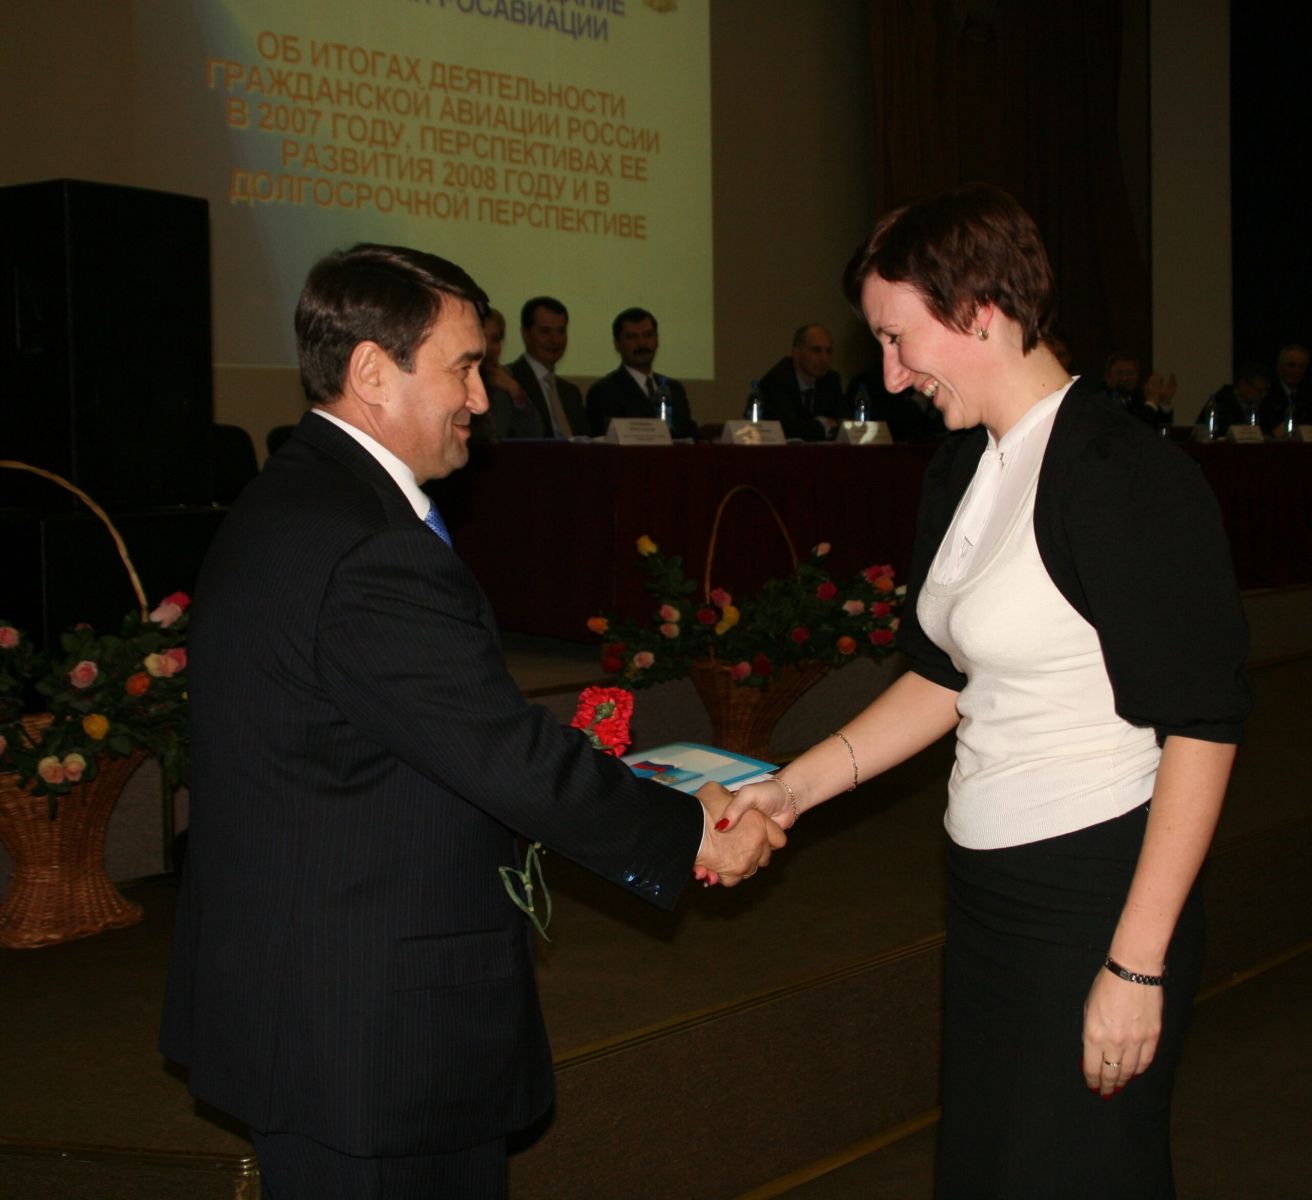 Вручение награды на расширенном заседании Коллегии Росавиации, 2008 г.